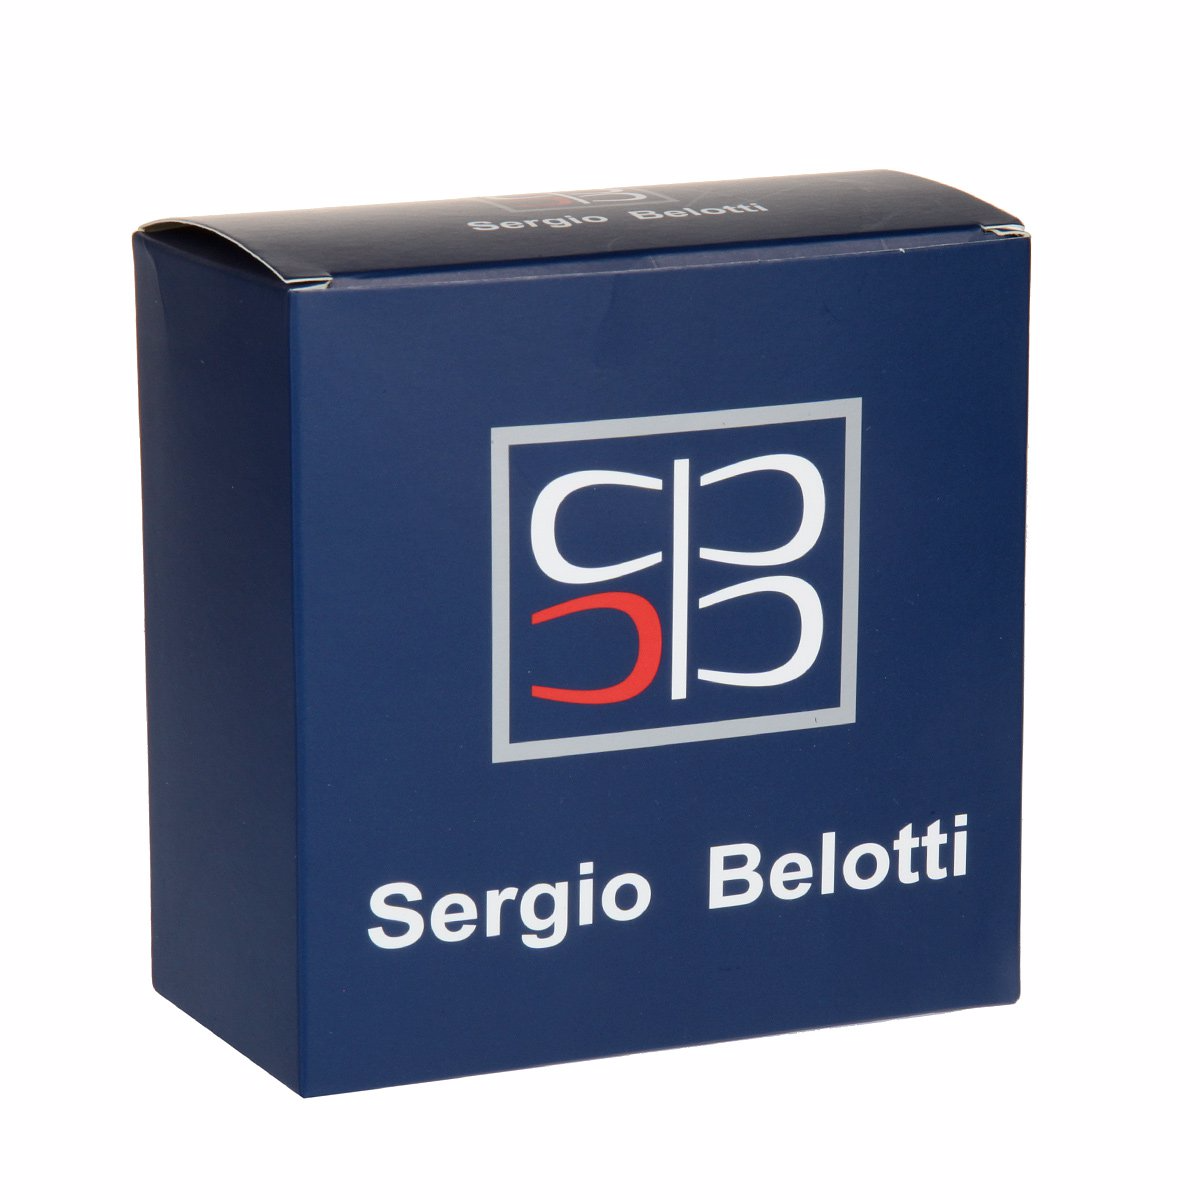 Ремень джинсовый
Sergio Belotti
2018/40 Nero Ремни и пояса